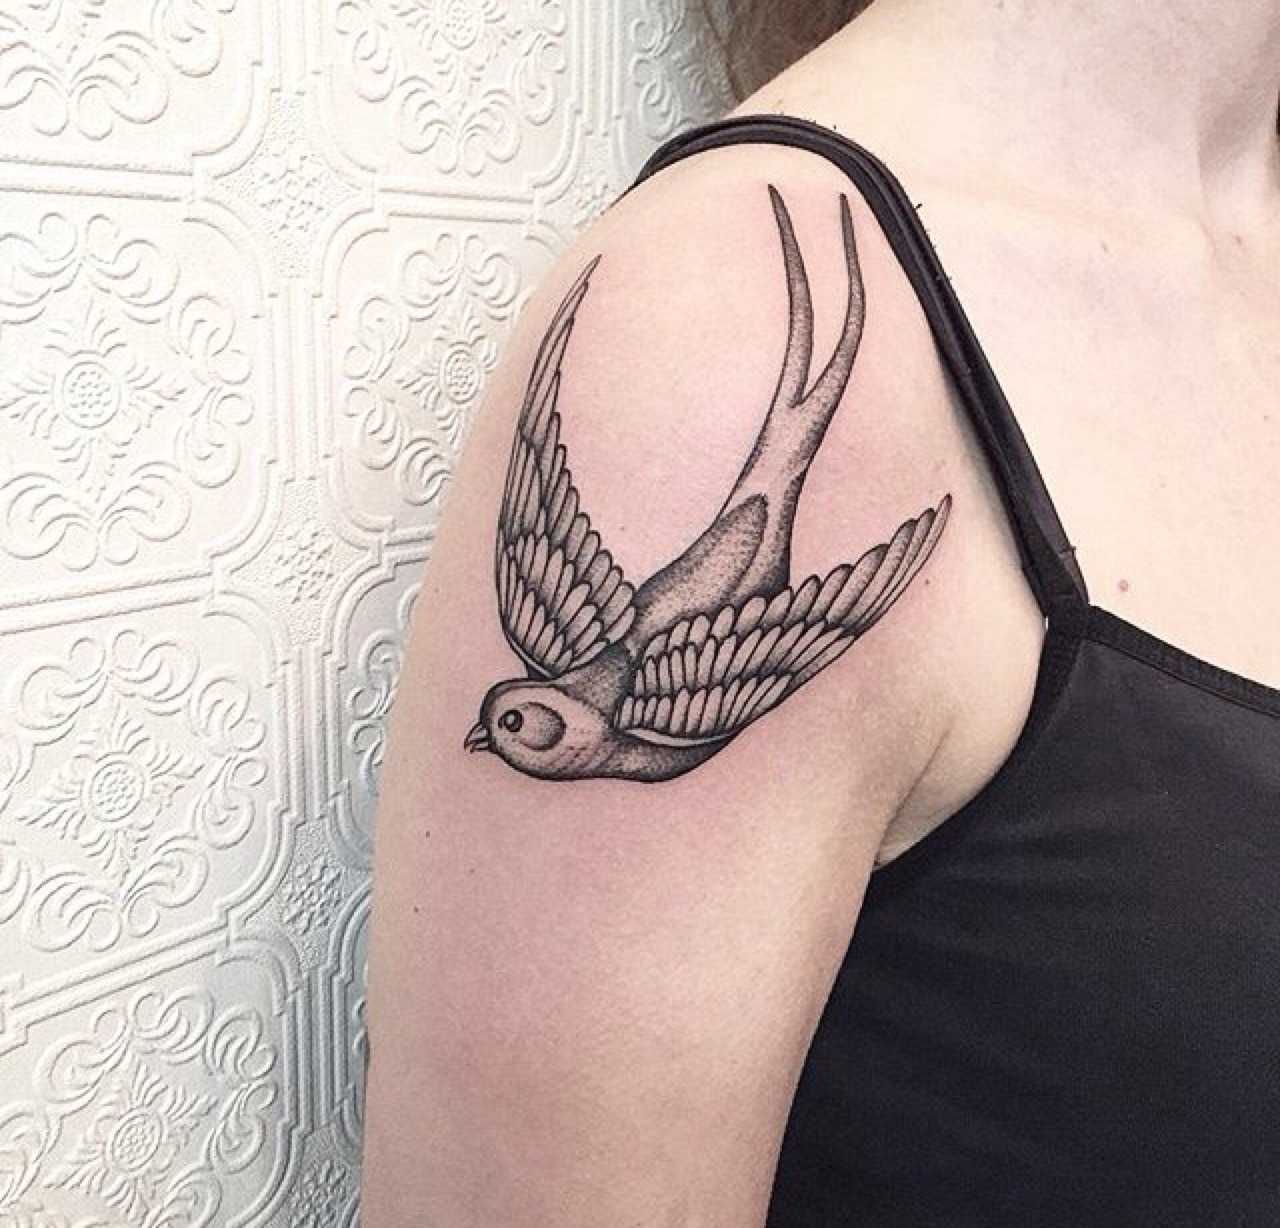 Swallow tattoo by Johno Tattooer